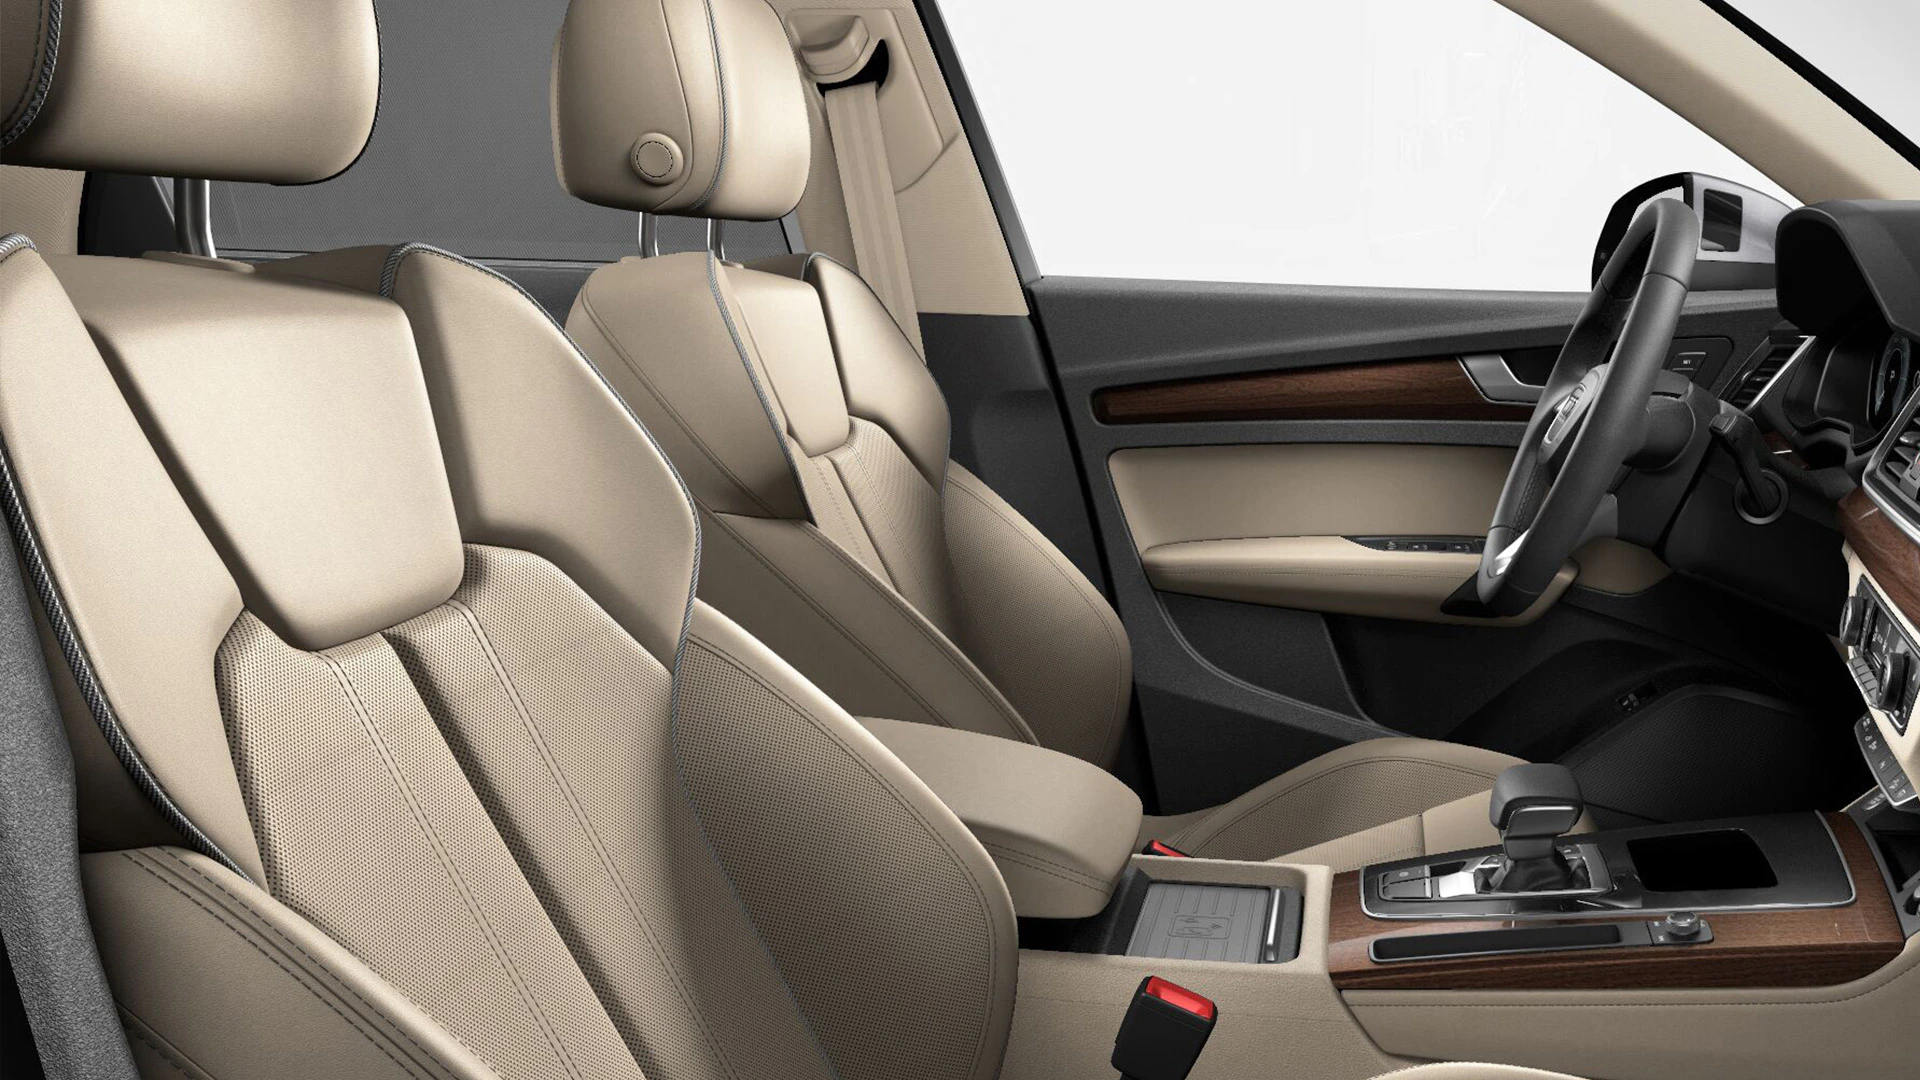 Audi Q5 Interior Compared to SQ5 Interior